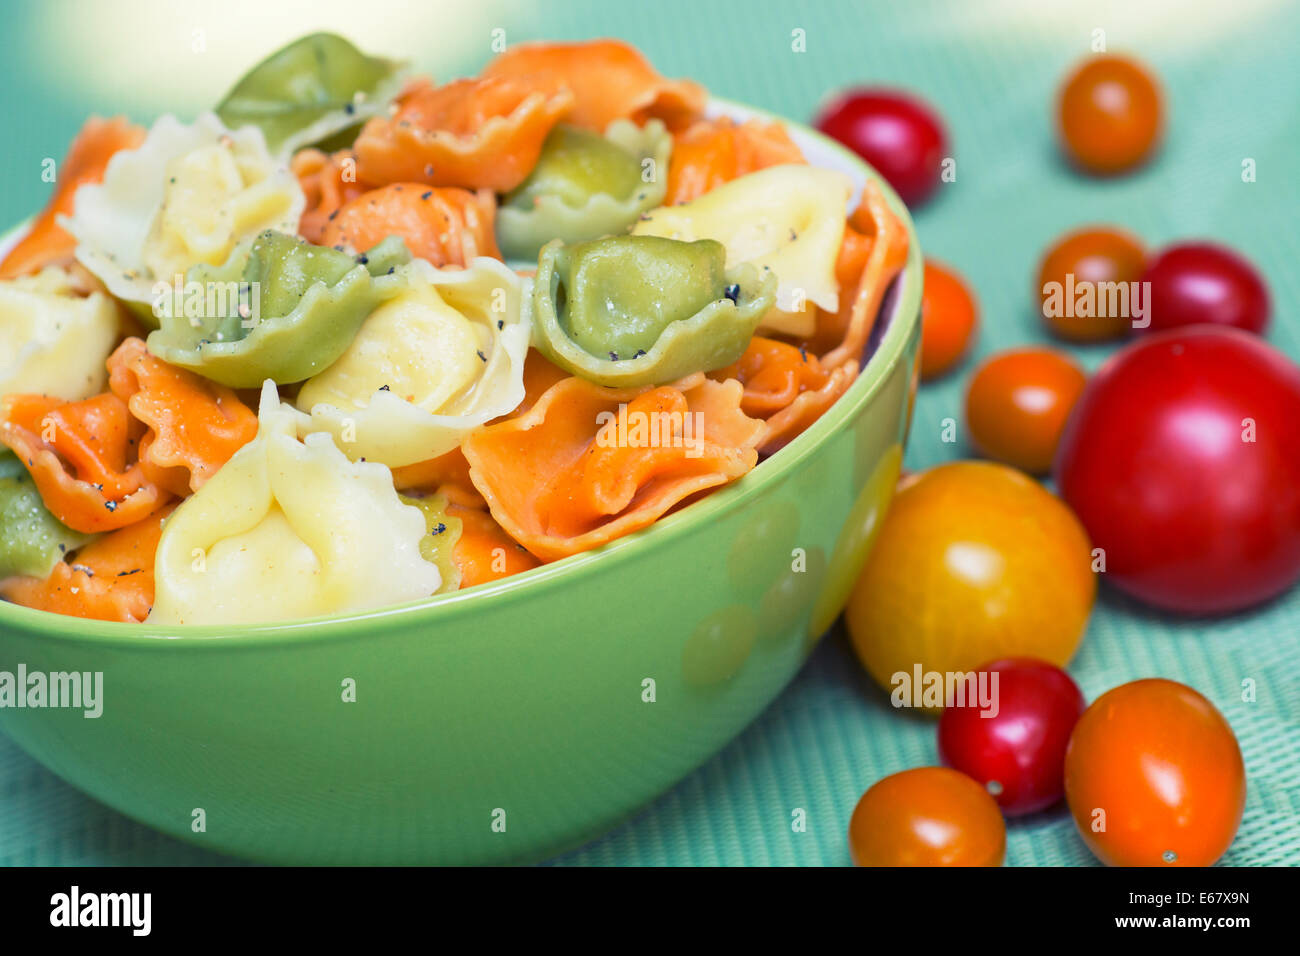 Tortellini, Tricolor, Green Orange Colored Pasta in a Bowl Stock Photo